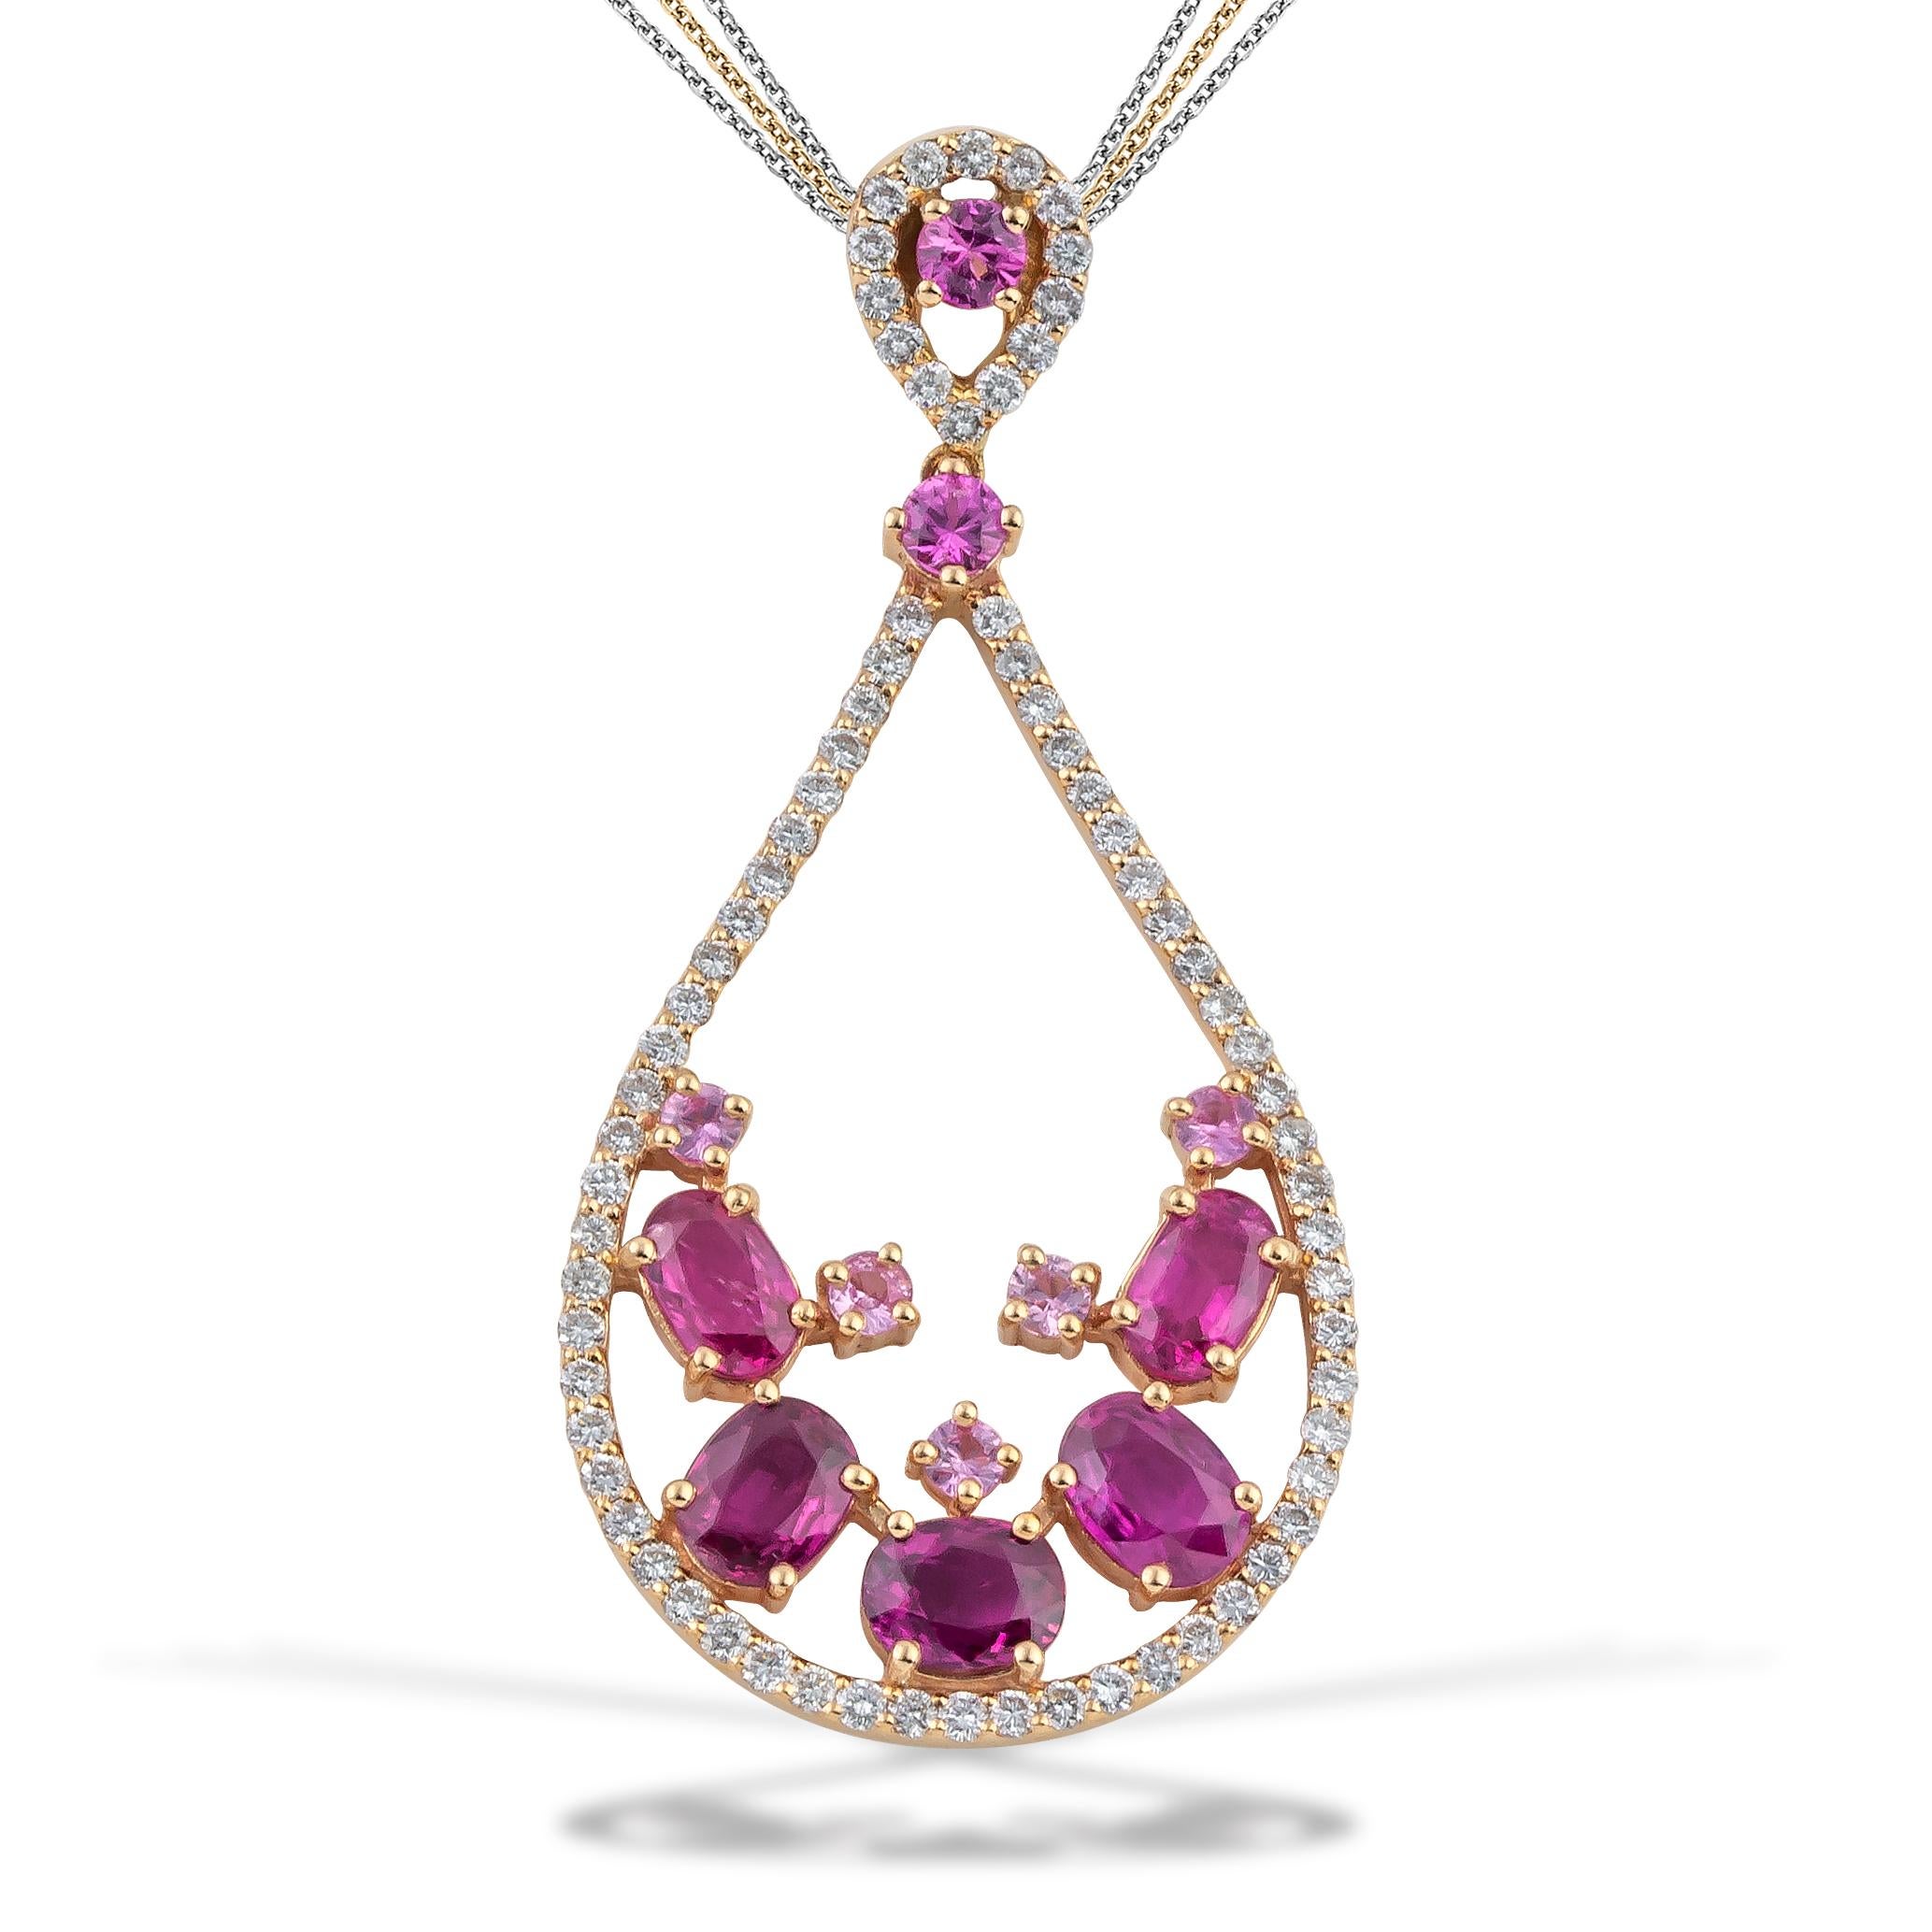 Ovaler rosafarbener Saphirtropfen - birnenförmiger Anhänger - Halskette, in 18kt Rose Gold mit weißen Pave-Diamanten . Dieses rosafarbene Saphirschmuckstück wird mit einer Multikette geliefert (1x Roségold und 2x Weißgold mit Diamantschliff). Diese